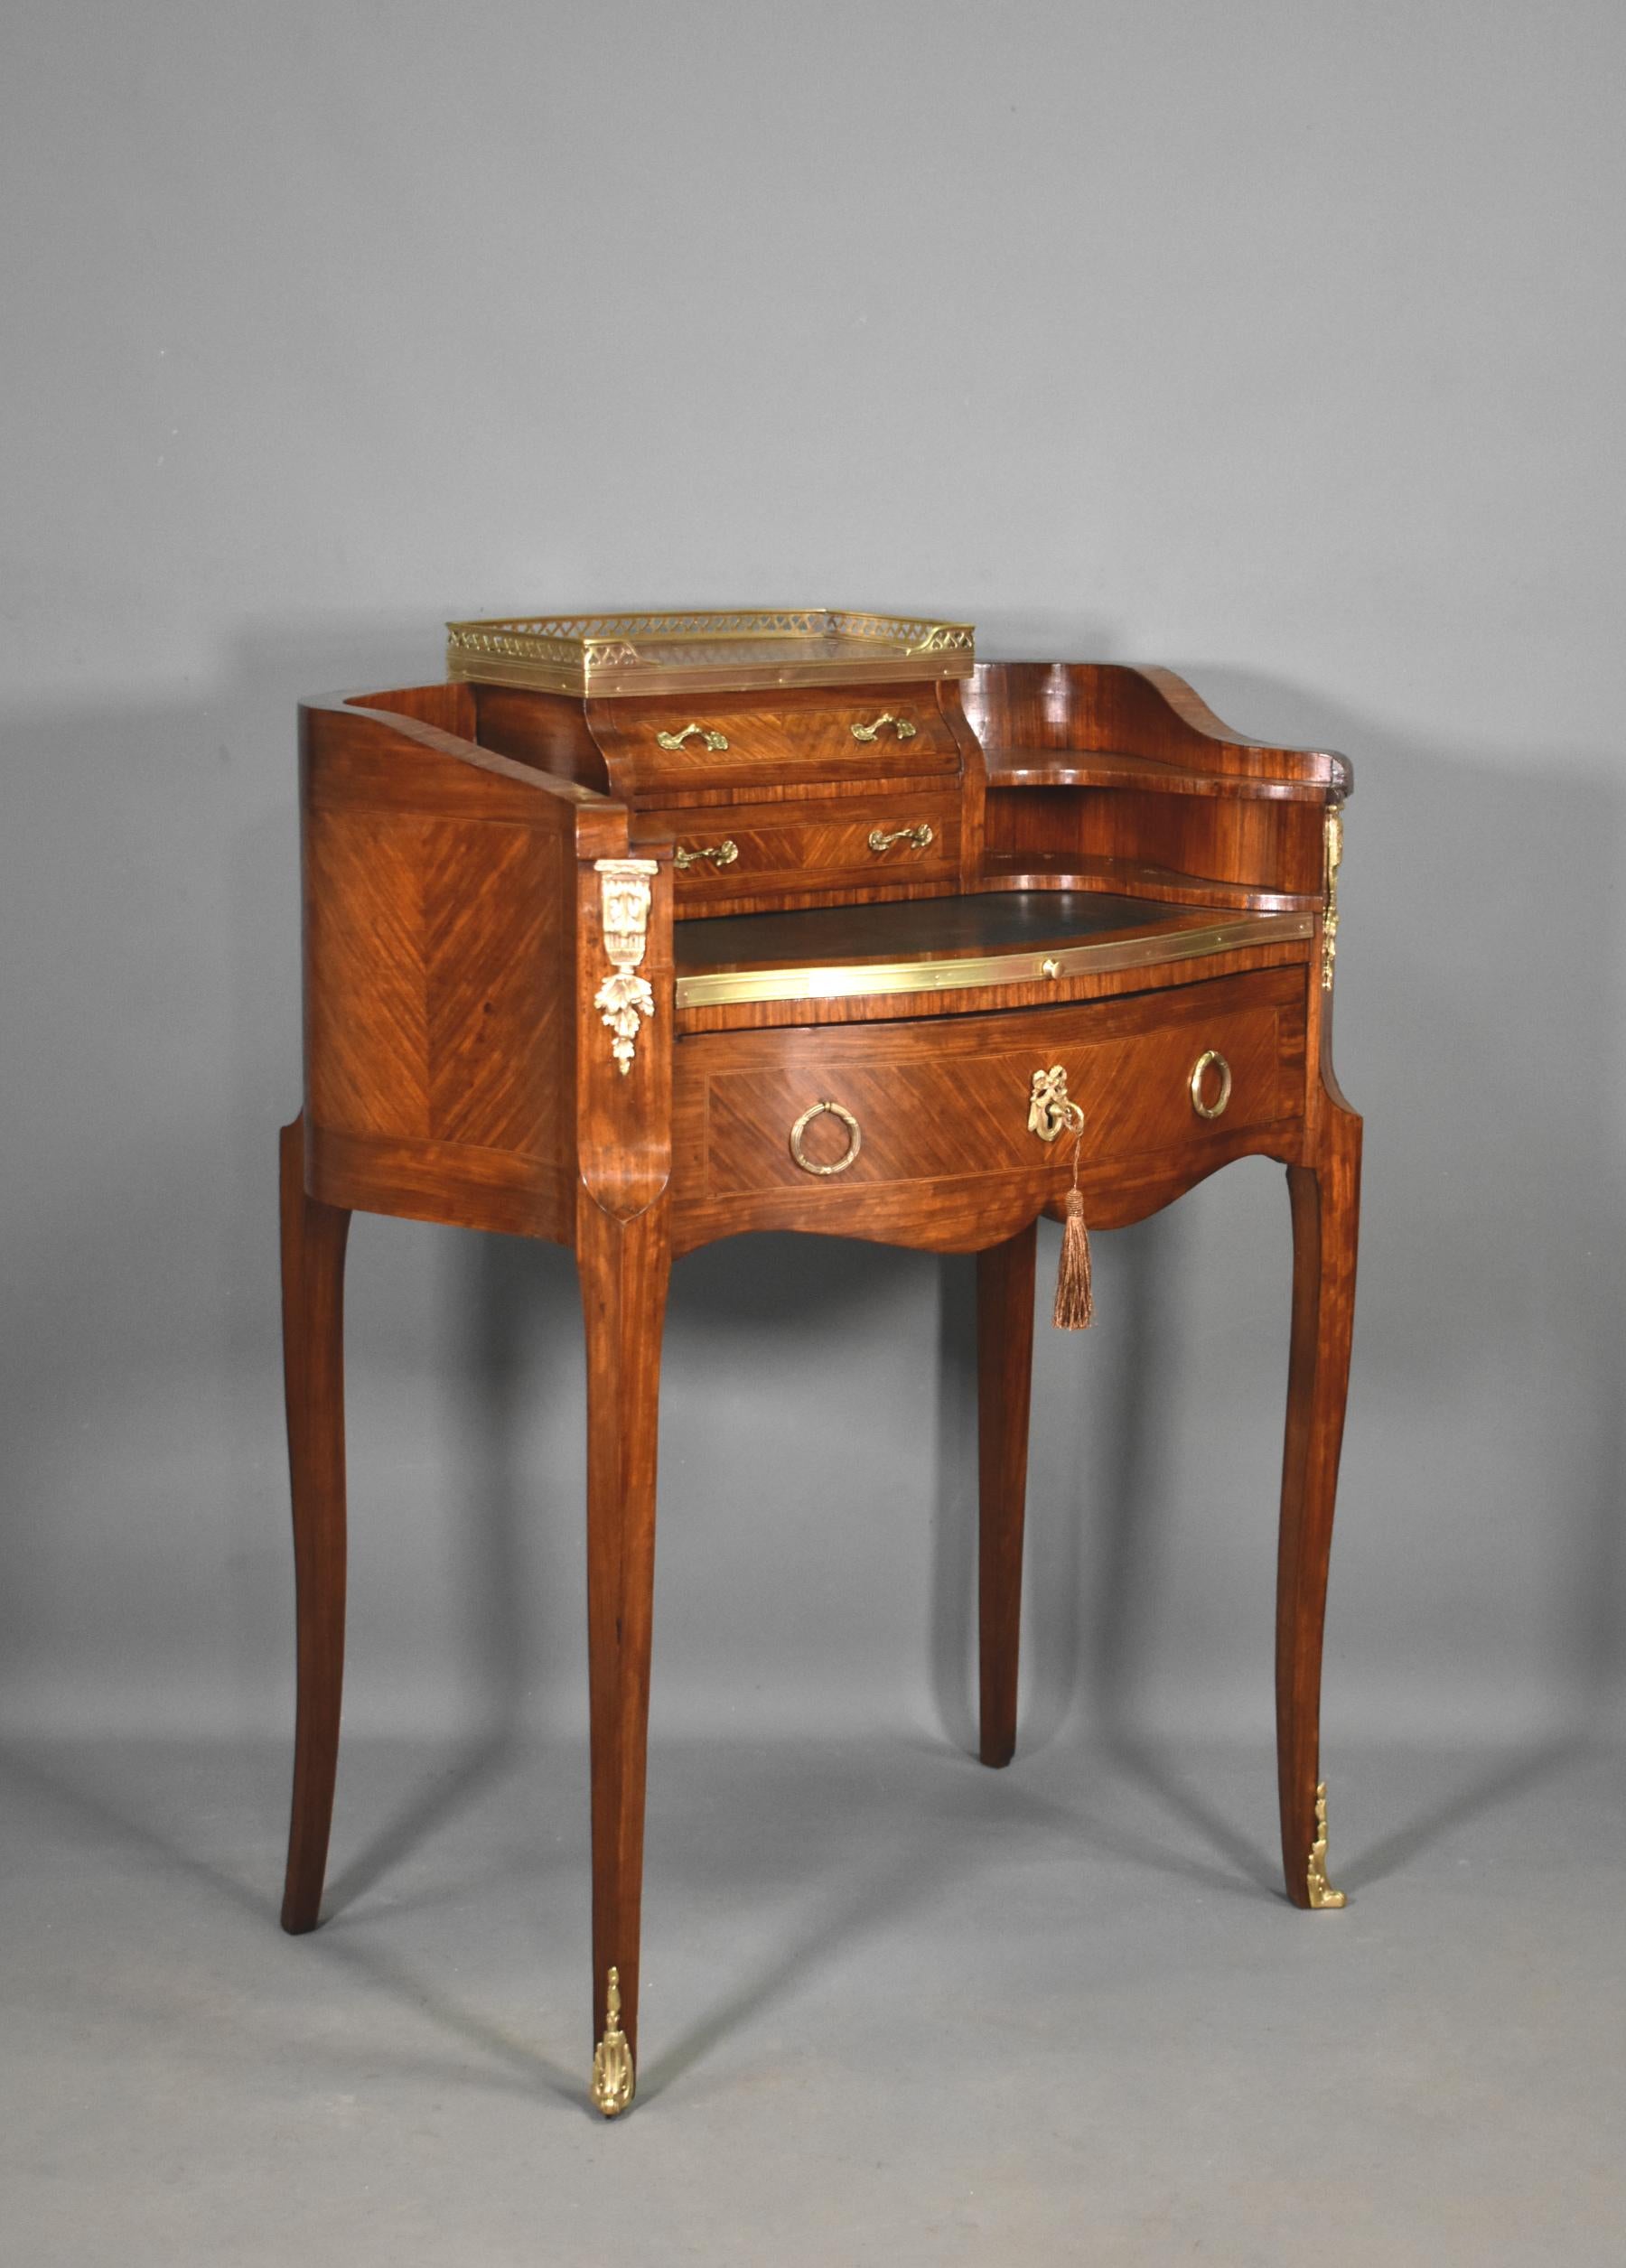 Französischer antiker Schreibtisch / Bonheur du Jour Übergang Stil Louis XV - Louis XVI

Dieser wunderschön gefertigte französische Damenschreibtisch hat viele herausragende Eigenschaften.

Die durchbrochene Messinggalerie auf der Oberseite